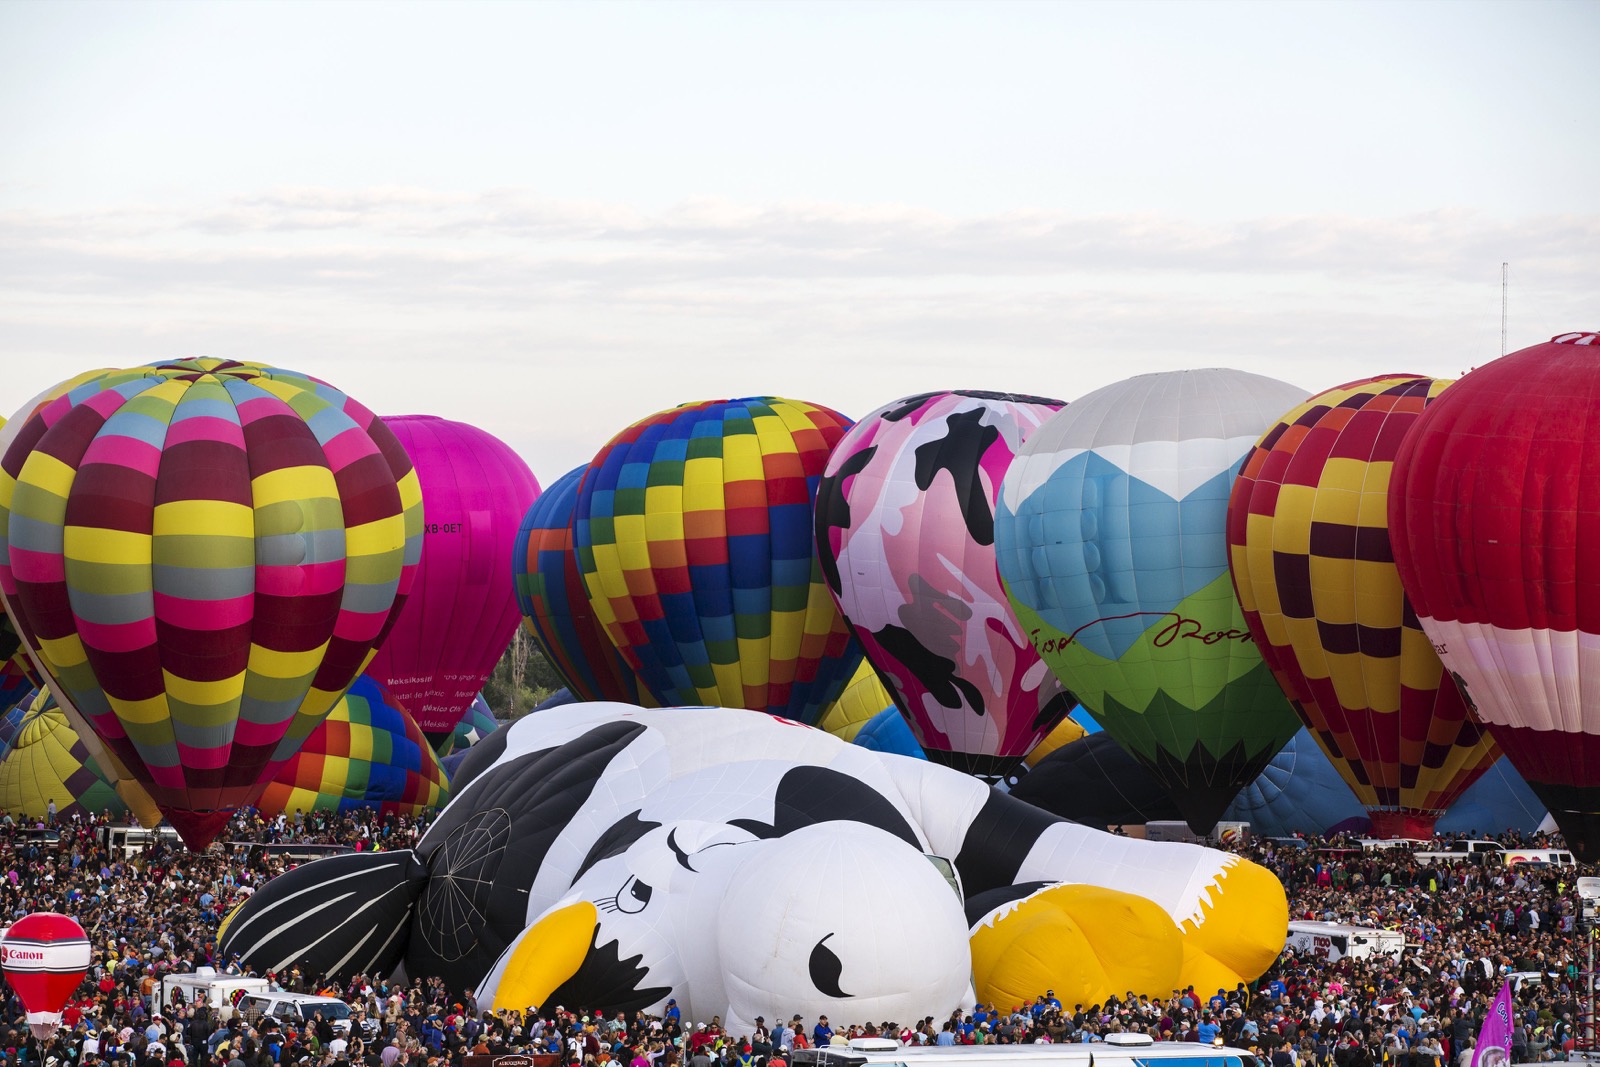 Hàng ngàn người tham quan đang tụ tập để xem khí cầu, xung quanh những khí cầu hình tròn truyền thống là một khí cầu hình con bò sữa đang nằm dưới đất.